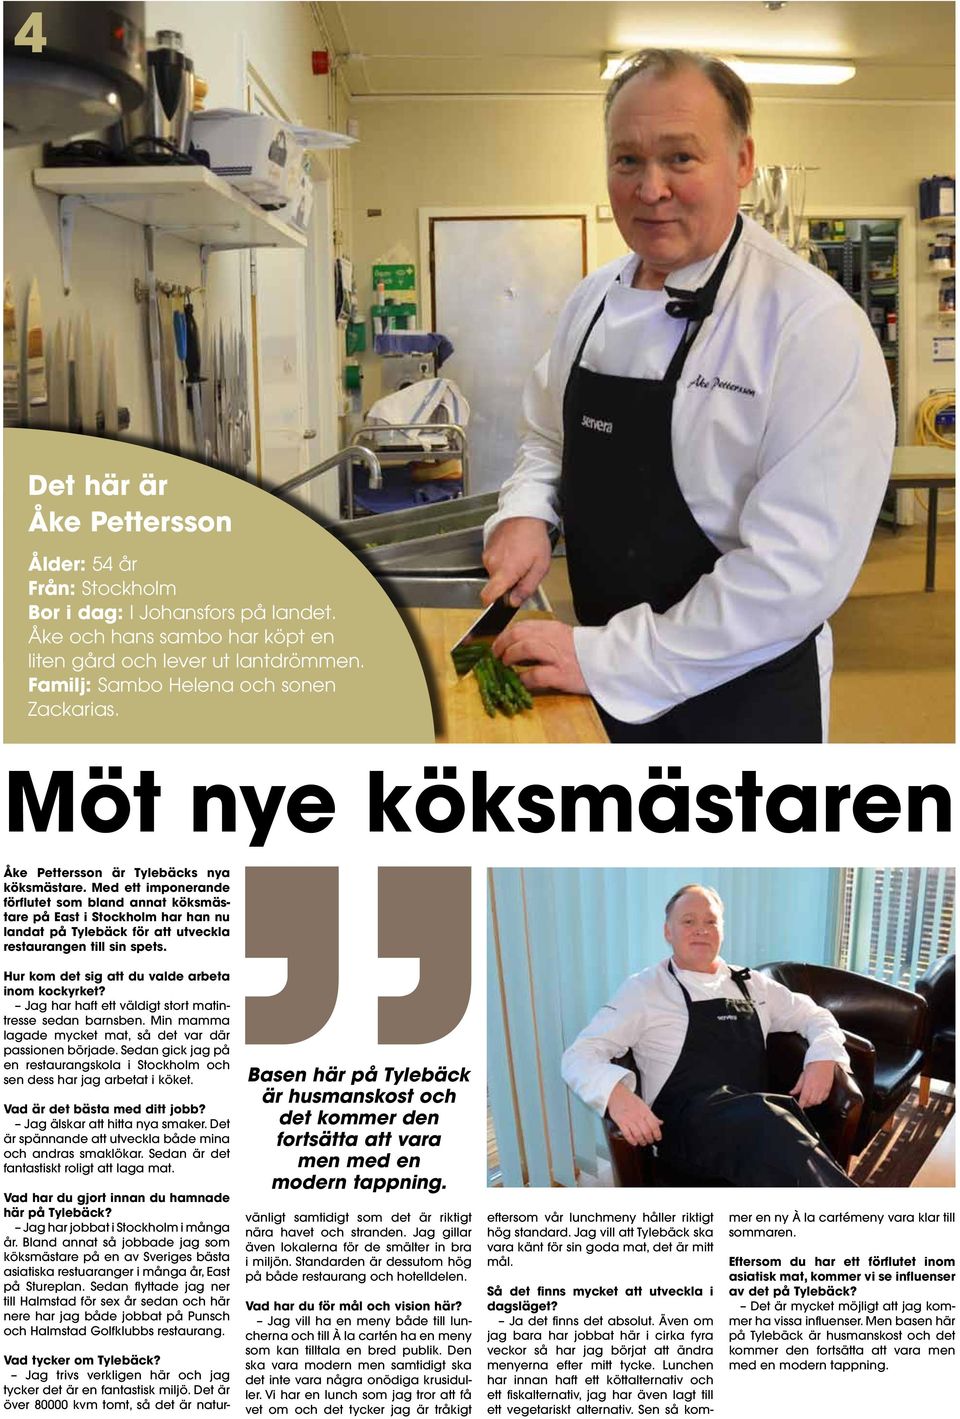 Med ett imponerande förflutet som bland annat köksmästare på East i Stockholm har han nu landat på Tylebäck för att utveckla restaurangen till sin spets.